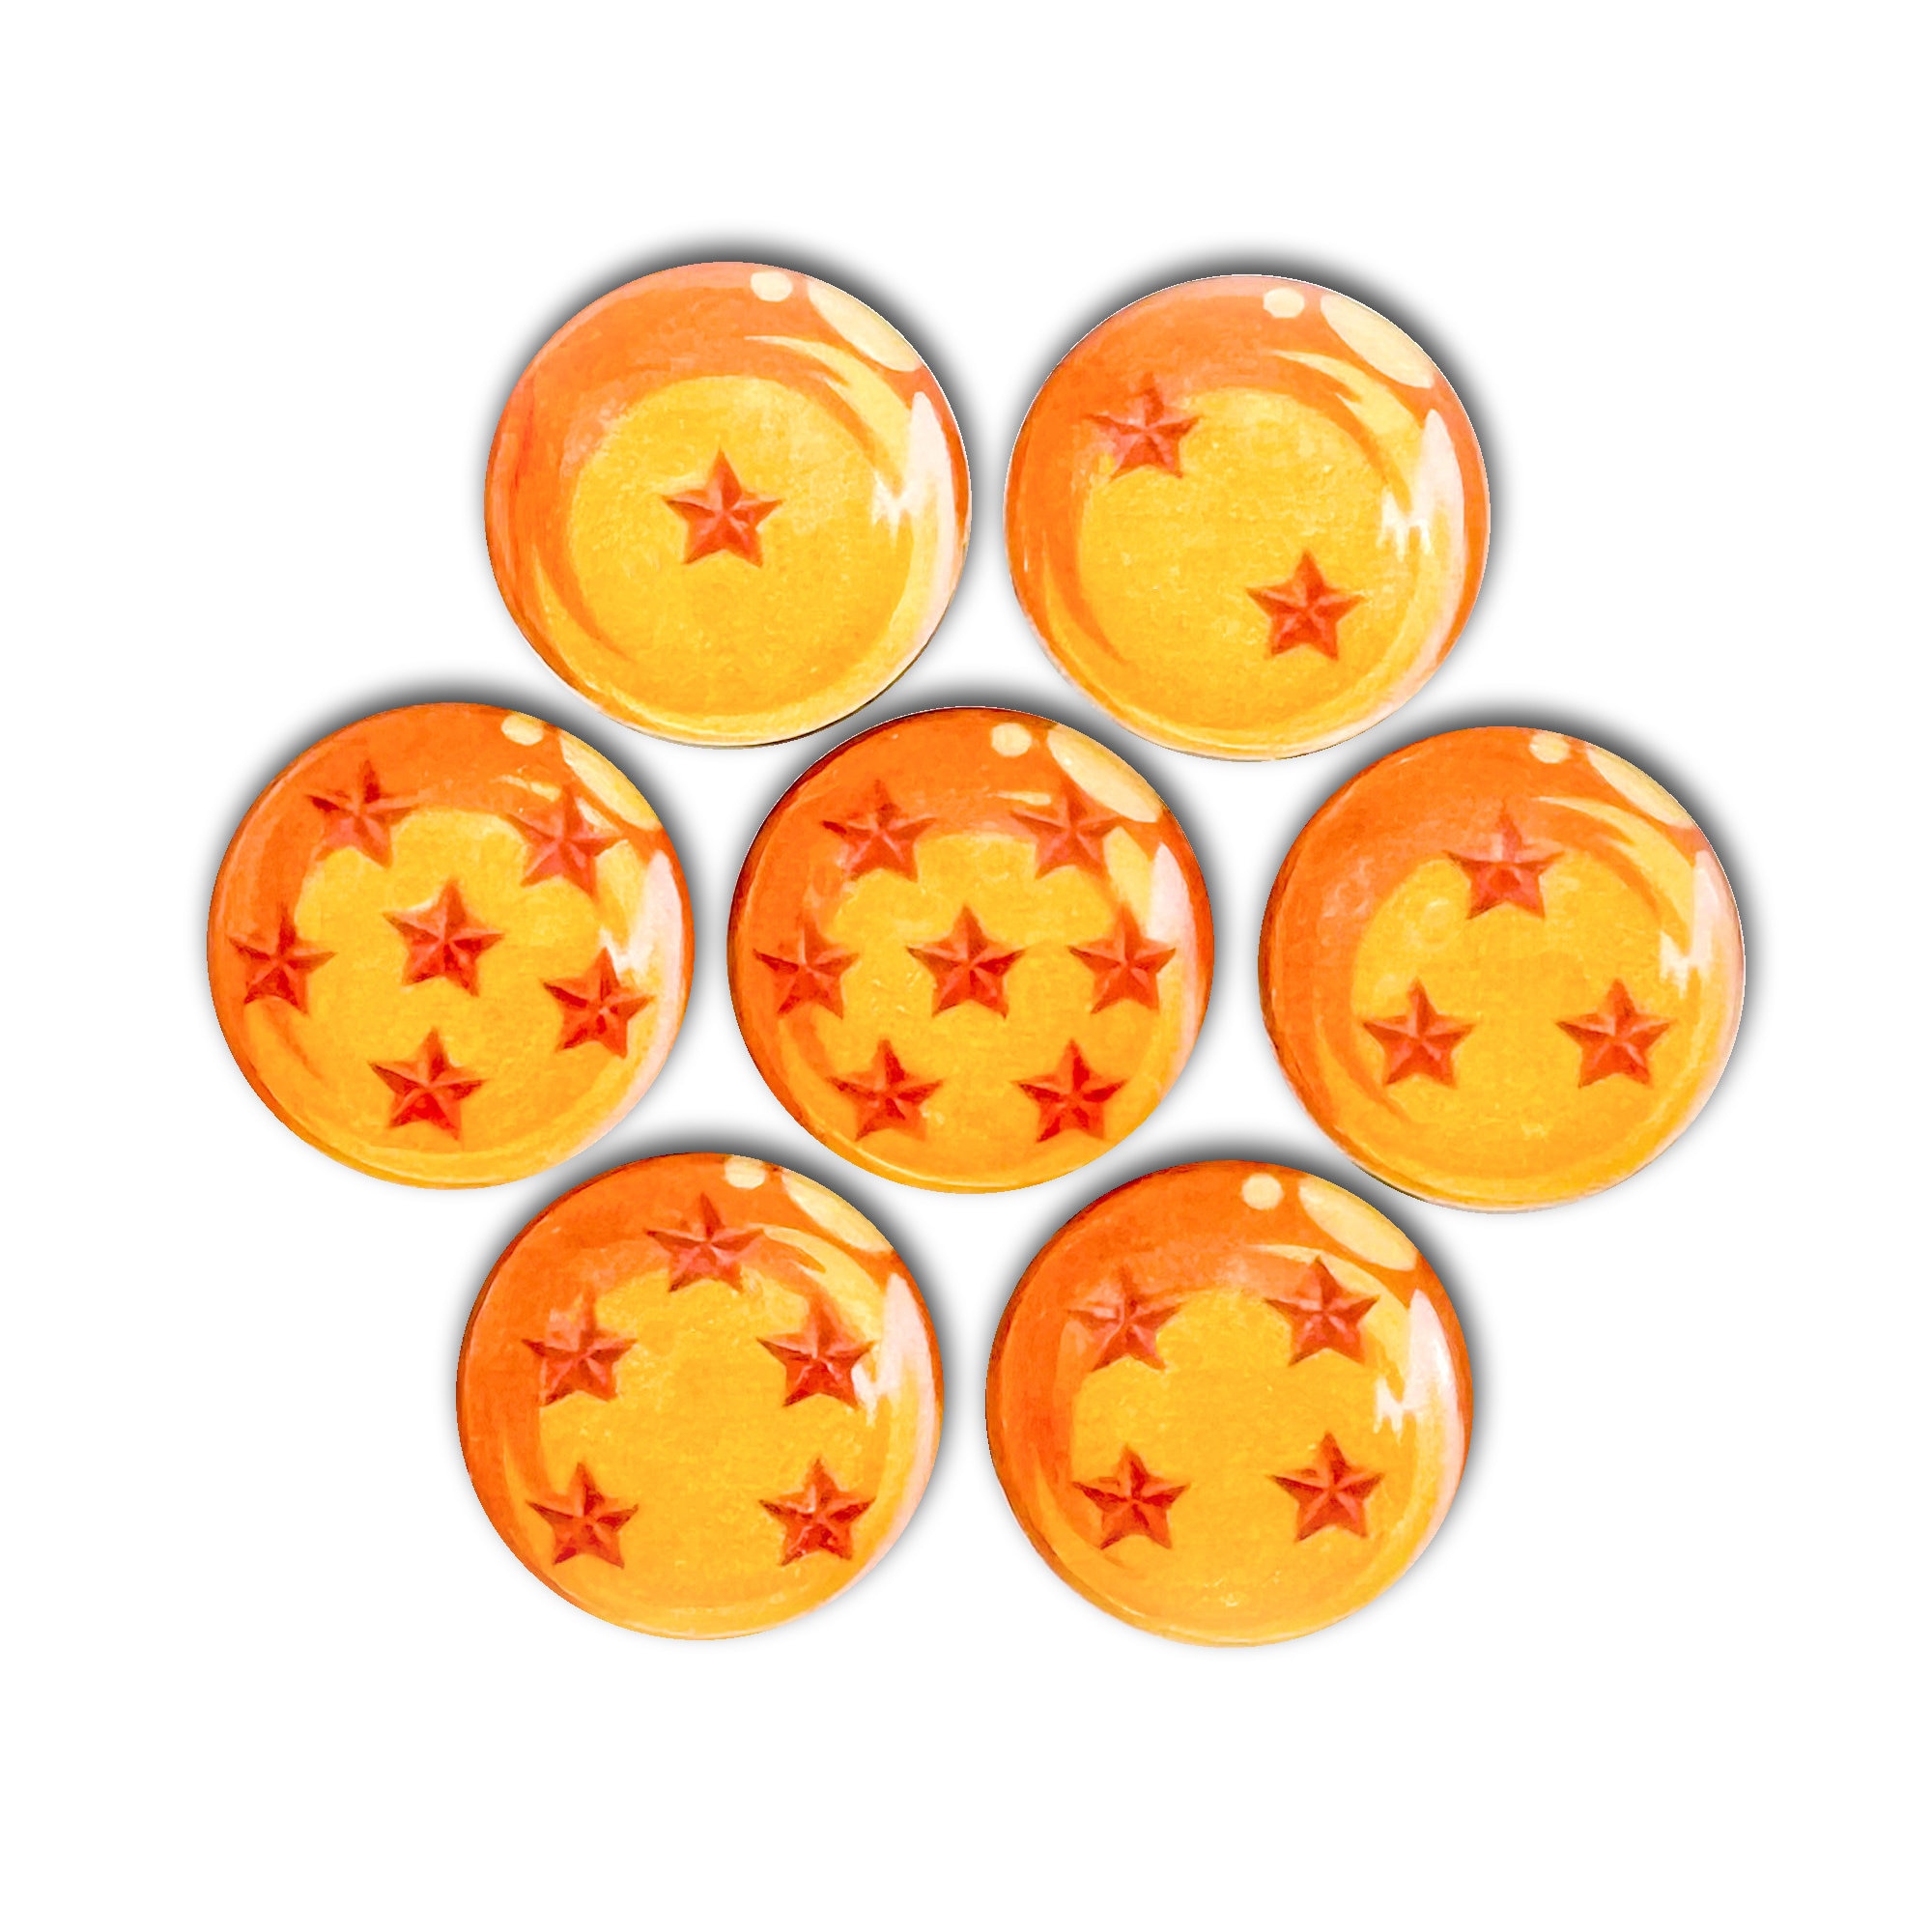 7PCS/LOT Esferas Del Dragon 4.5CM Dragon Ball Crystal Balls